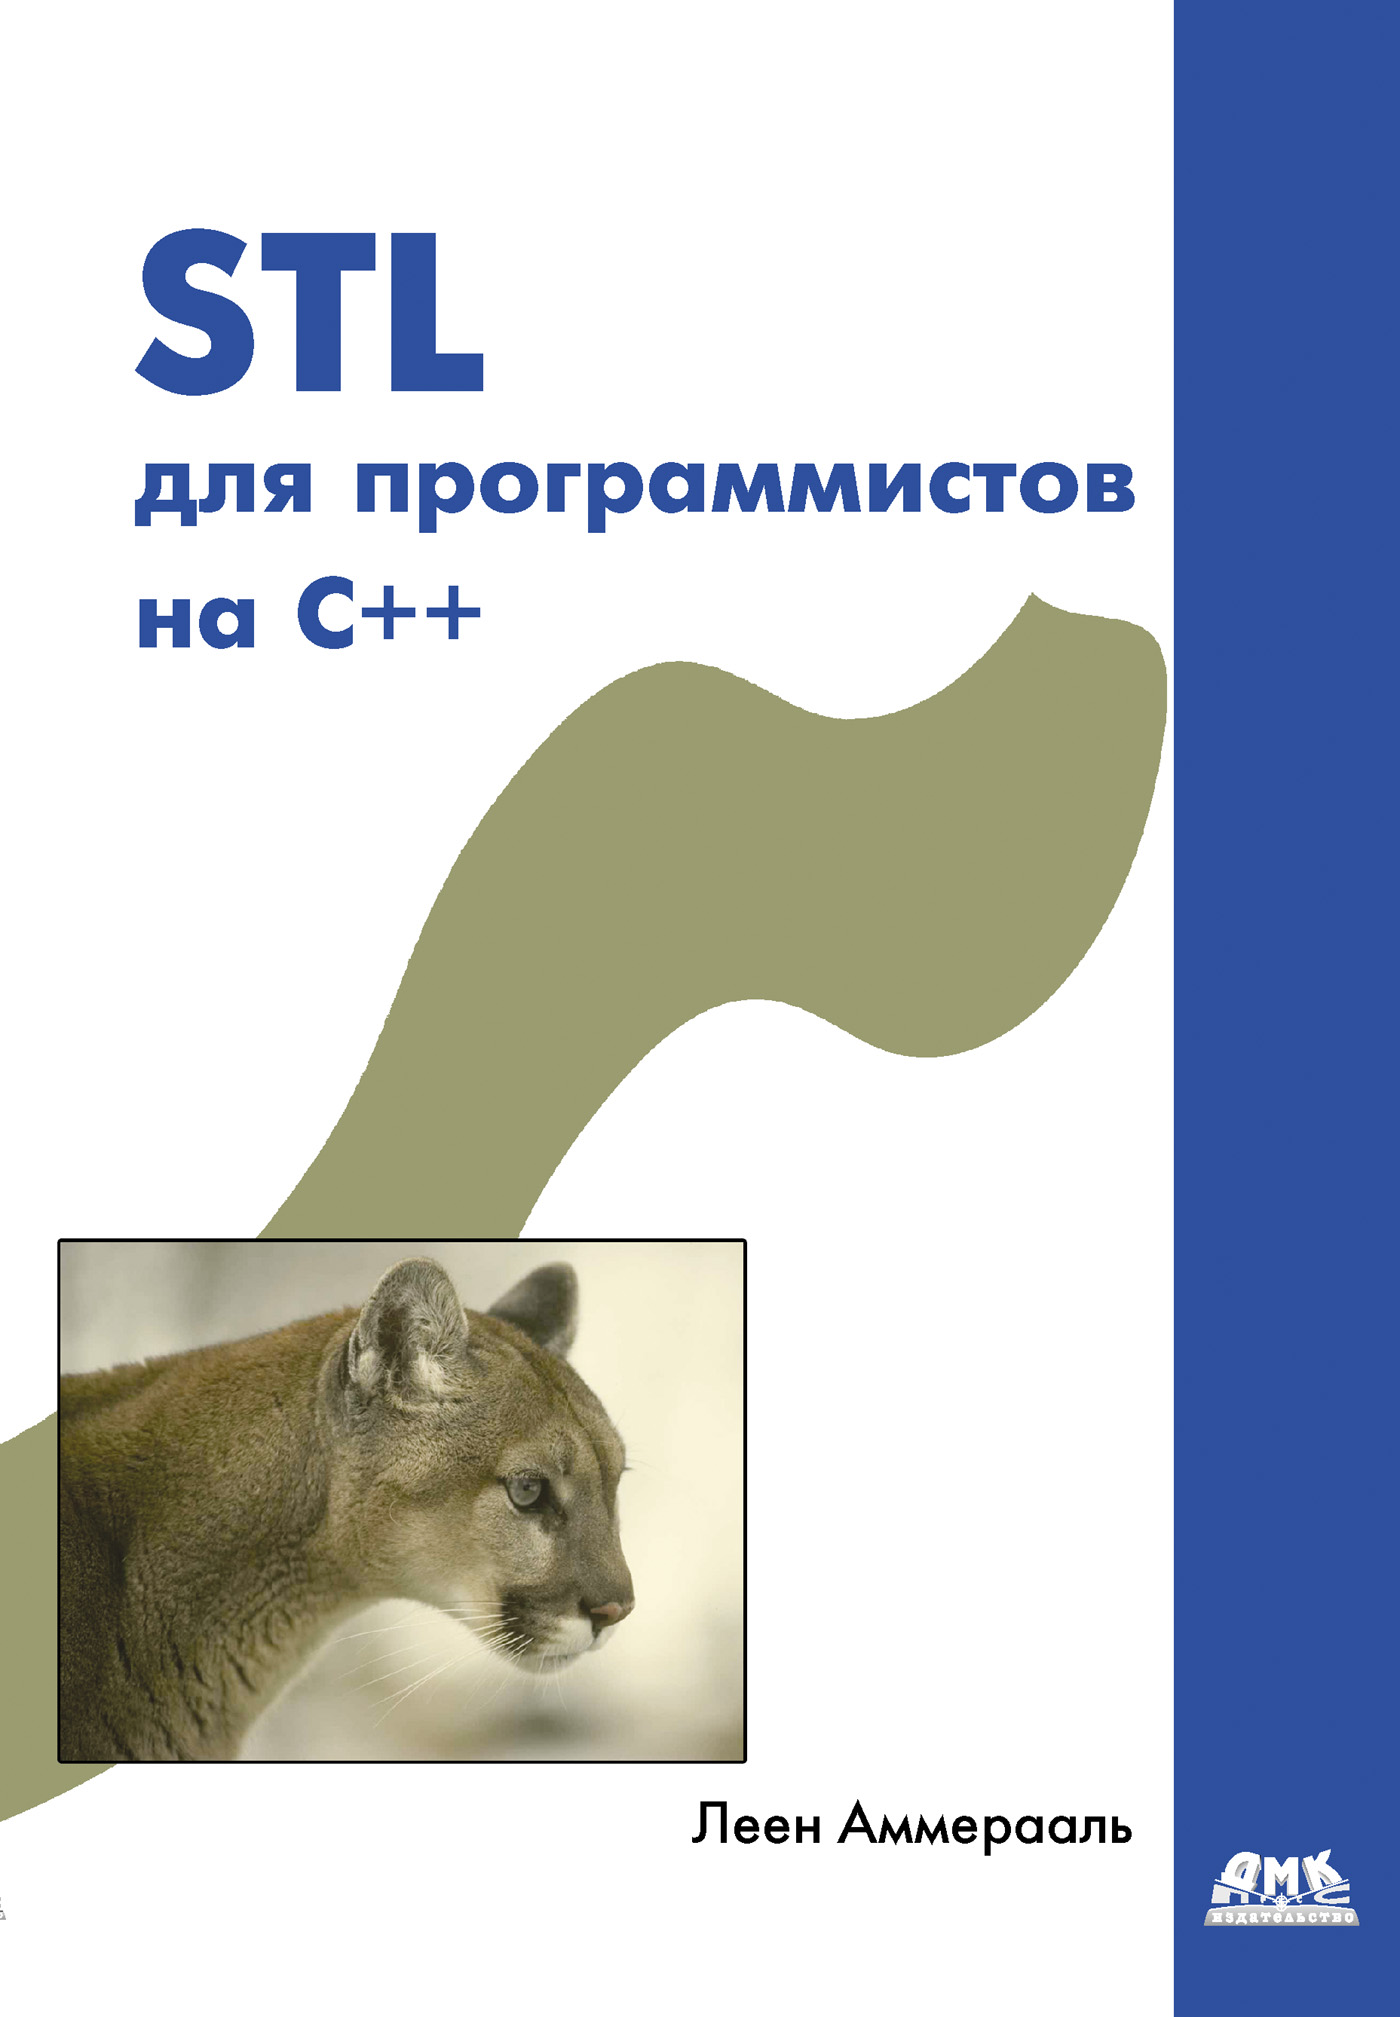 Книга  STL для программистов на C++ созданная Леен Аммерааль, Ю. А. Баранов может относится к жанру зарубежная компьютерная литература, программирование. Стоимость электронной книги STL для программистов на C++ с идентификатором 632425 составляет 159.00 руб.